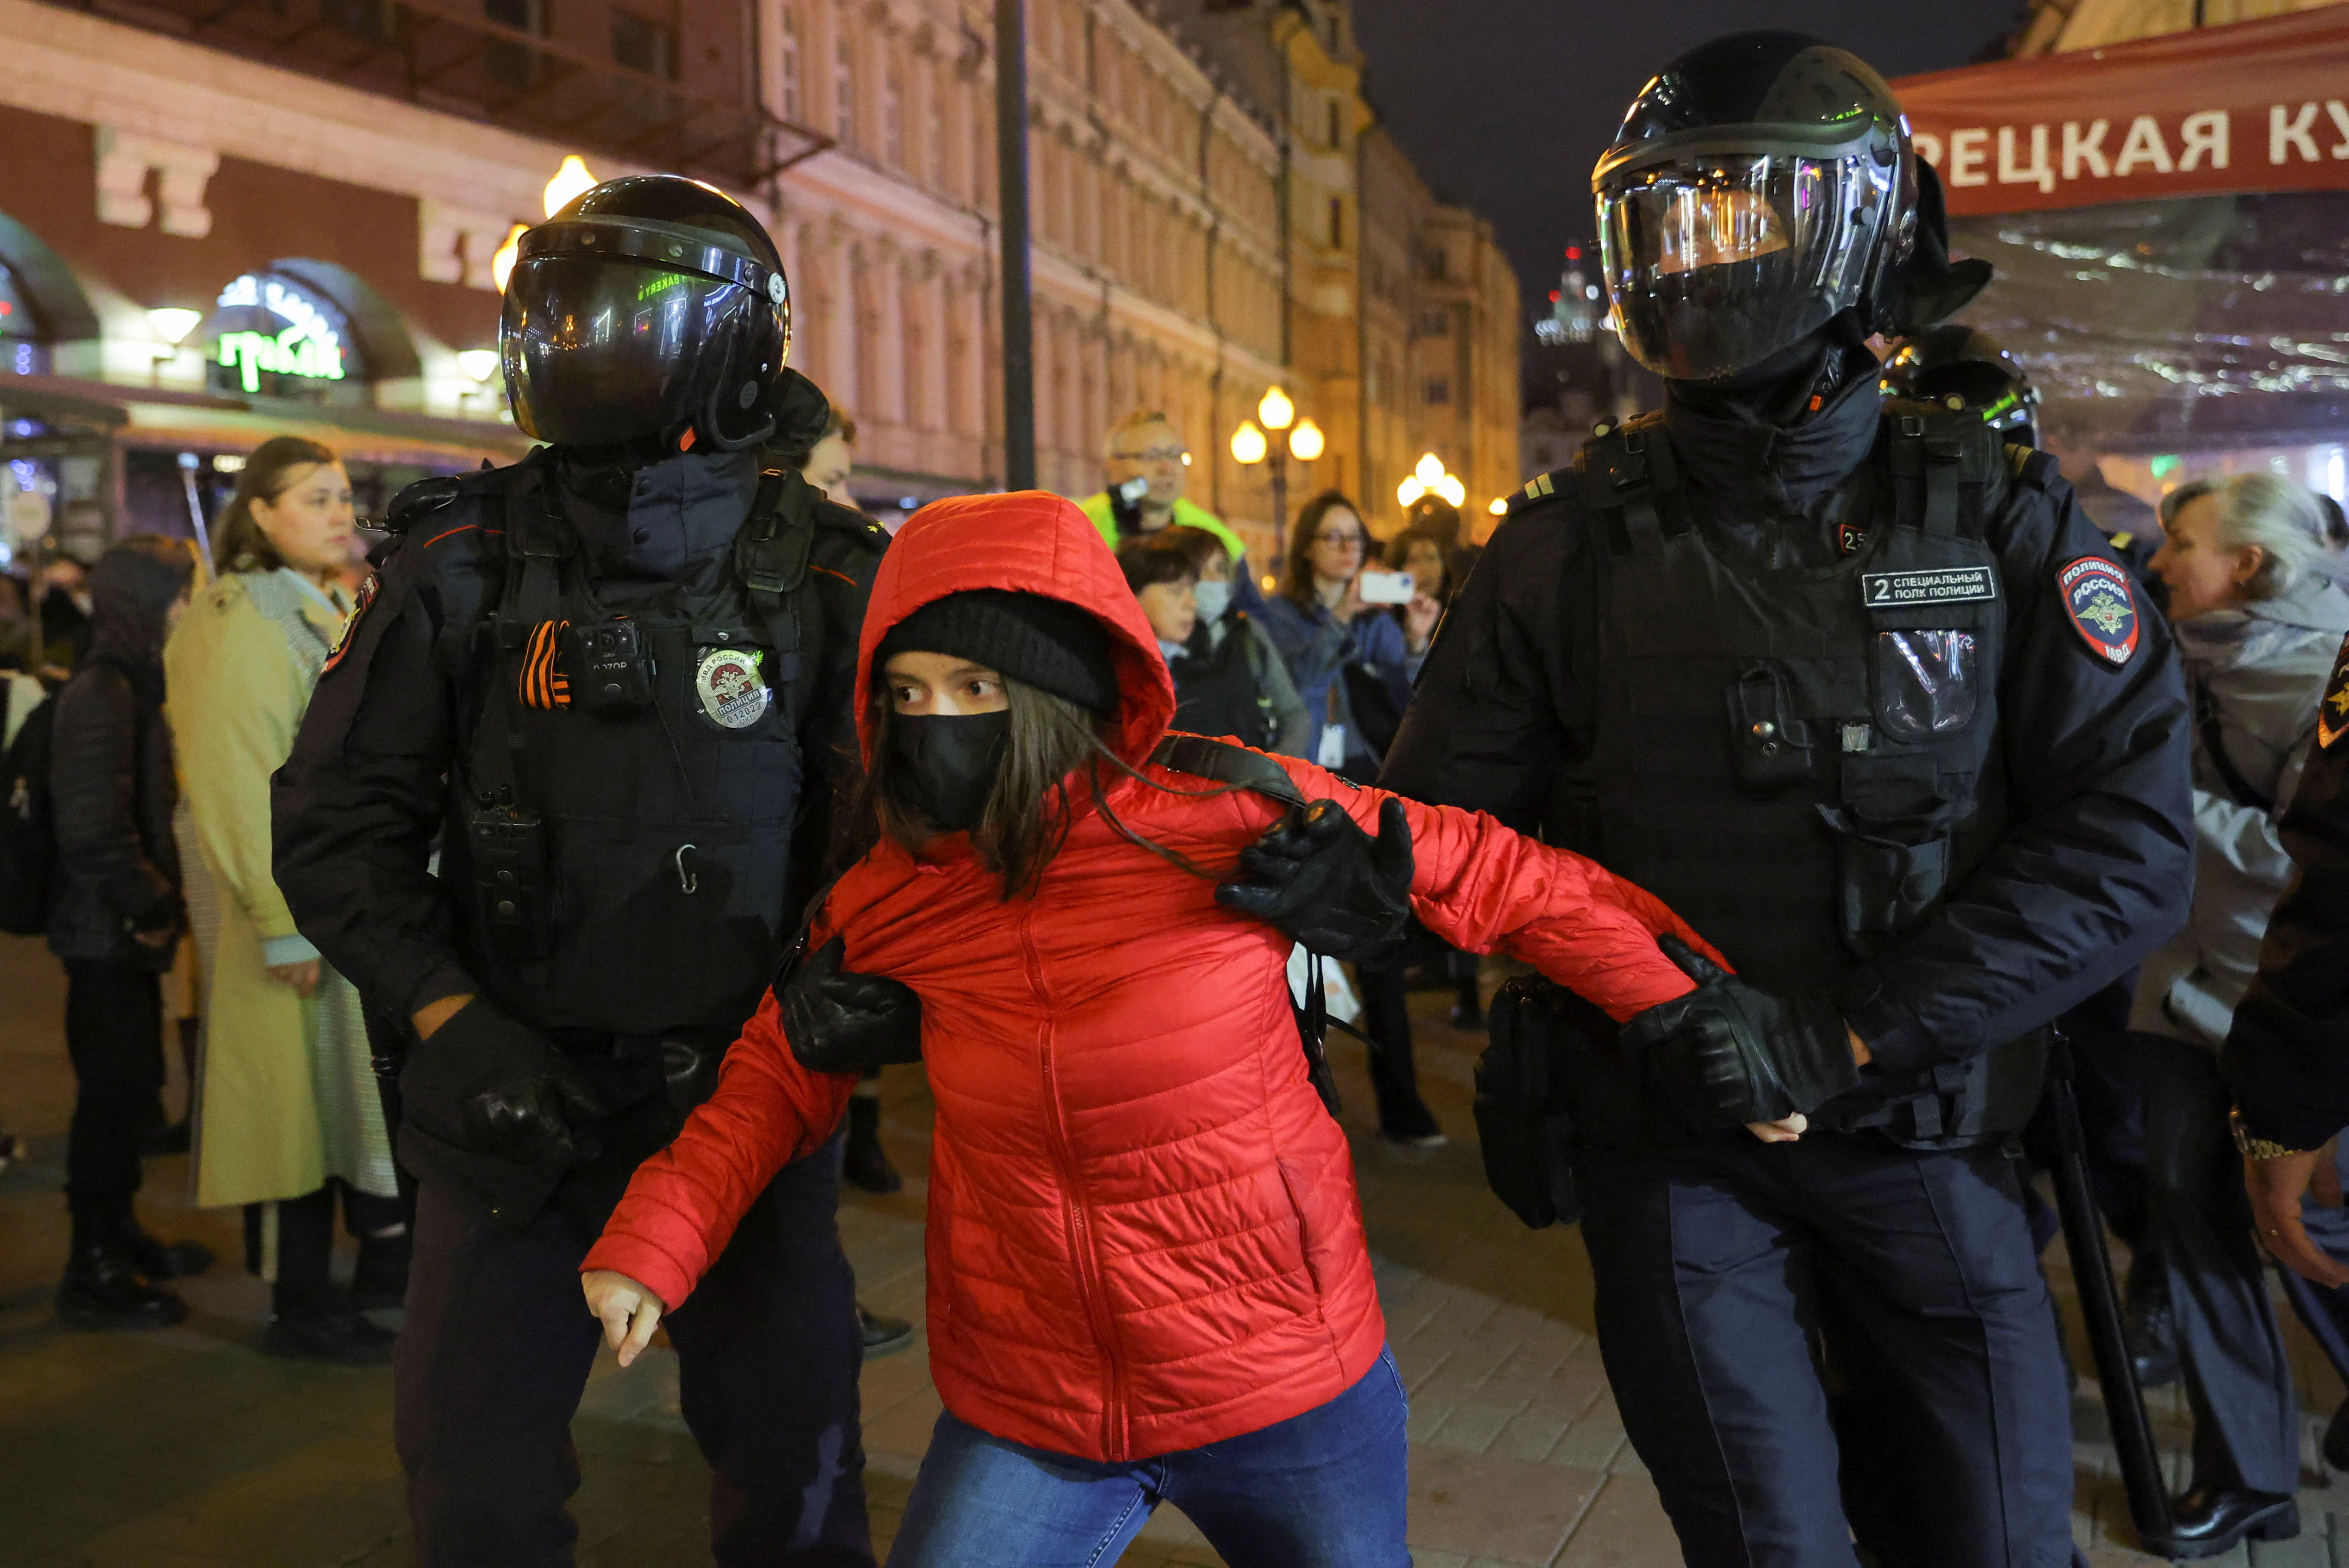 Una joven es detenida por los oficiales moscovitas (2022. REUTERS/REUTERS PHOTOGRAPHER)